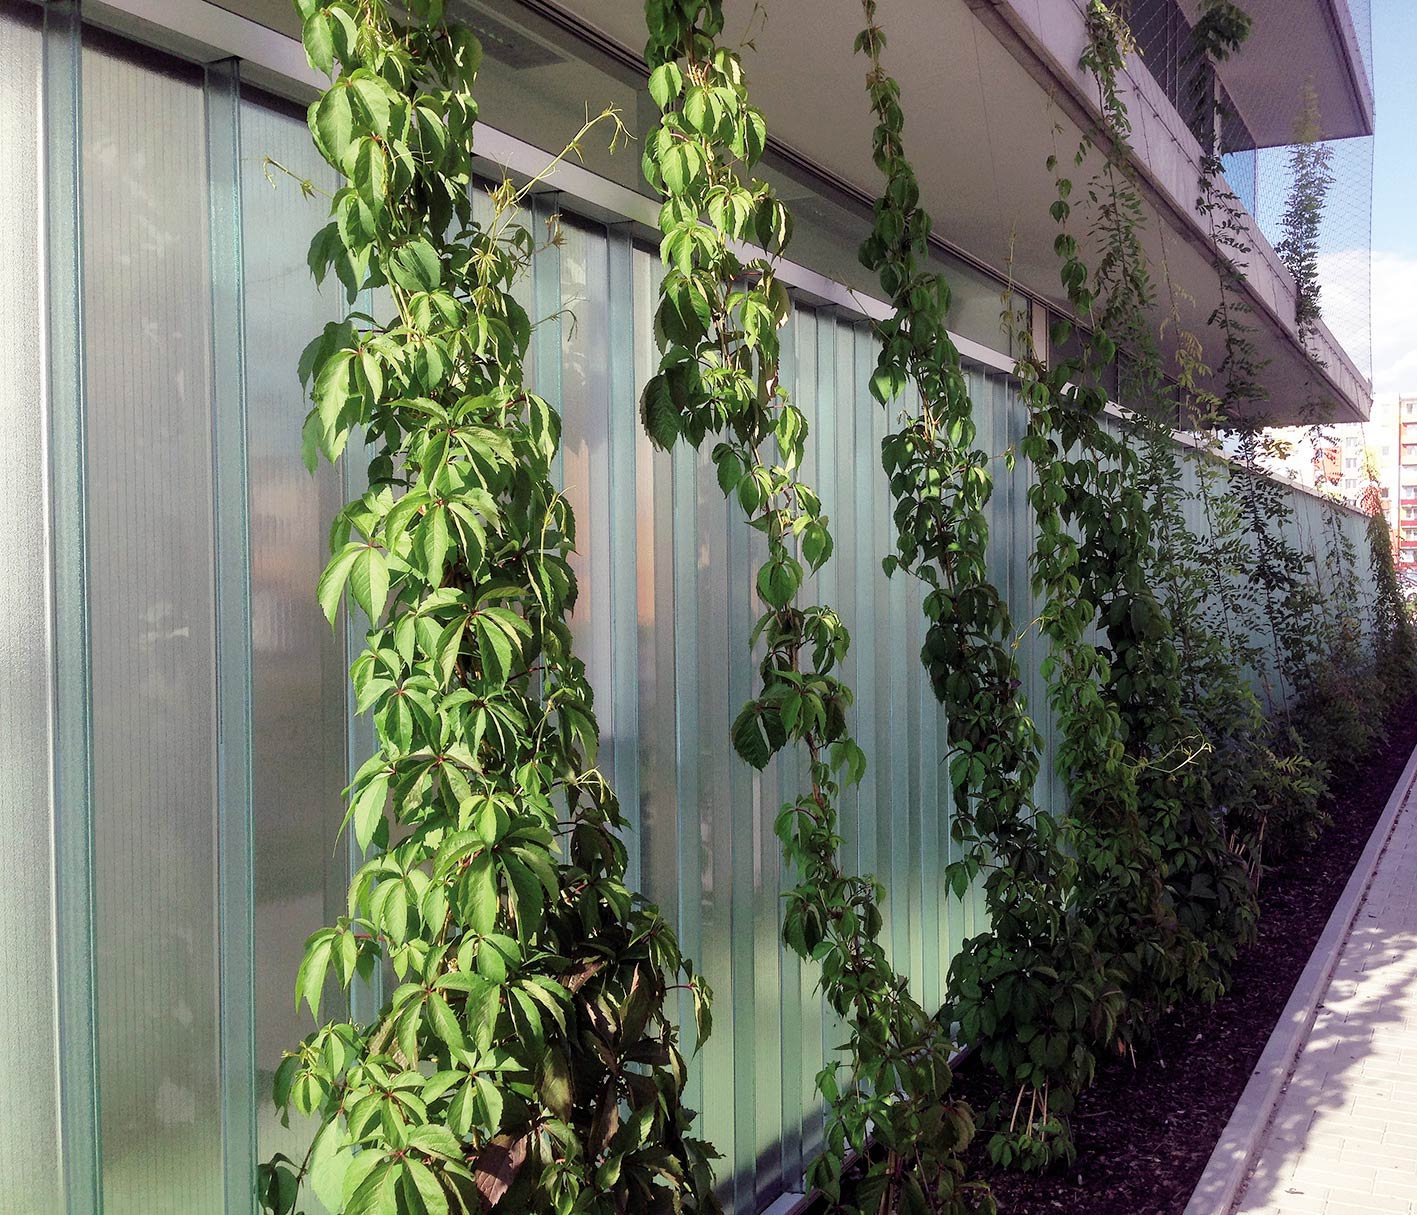 Zeleň chrání budovu před přímým slunečním zářením a vytváří příjemné mikroklima na obvodu budovy.